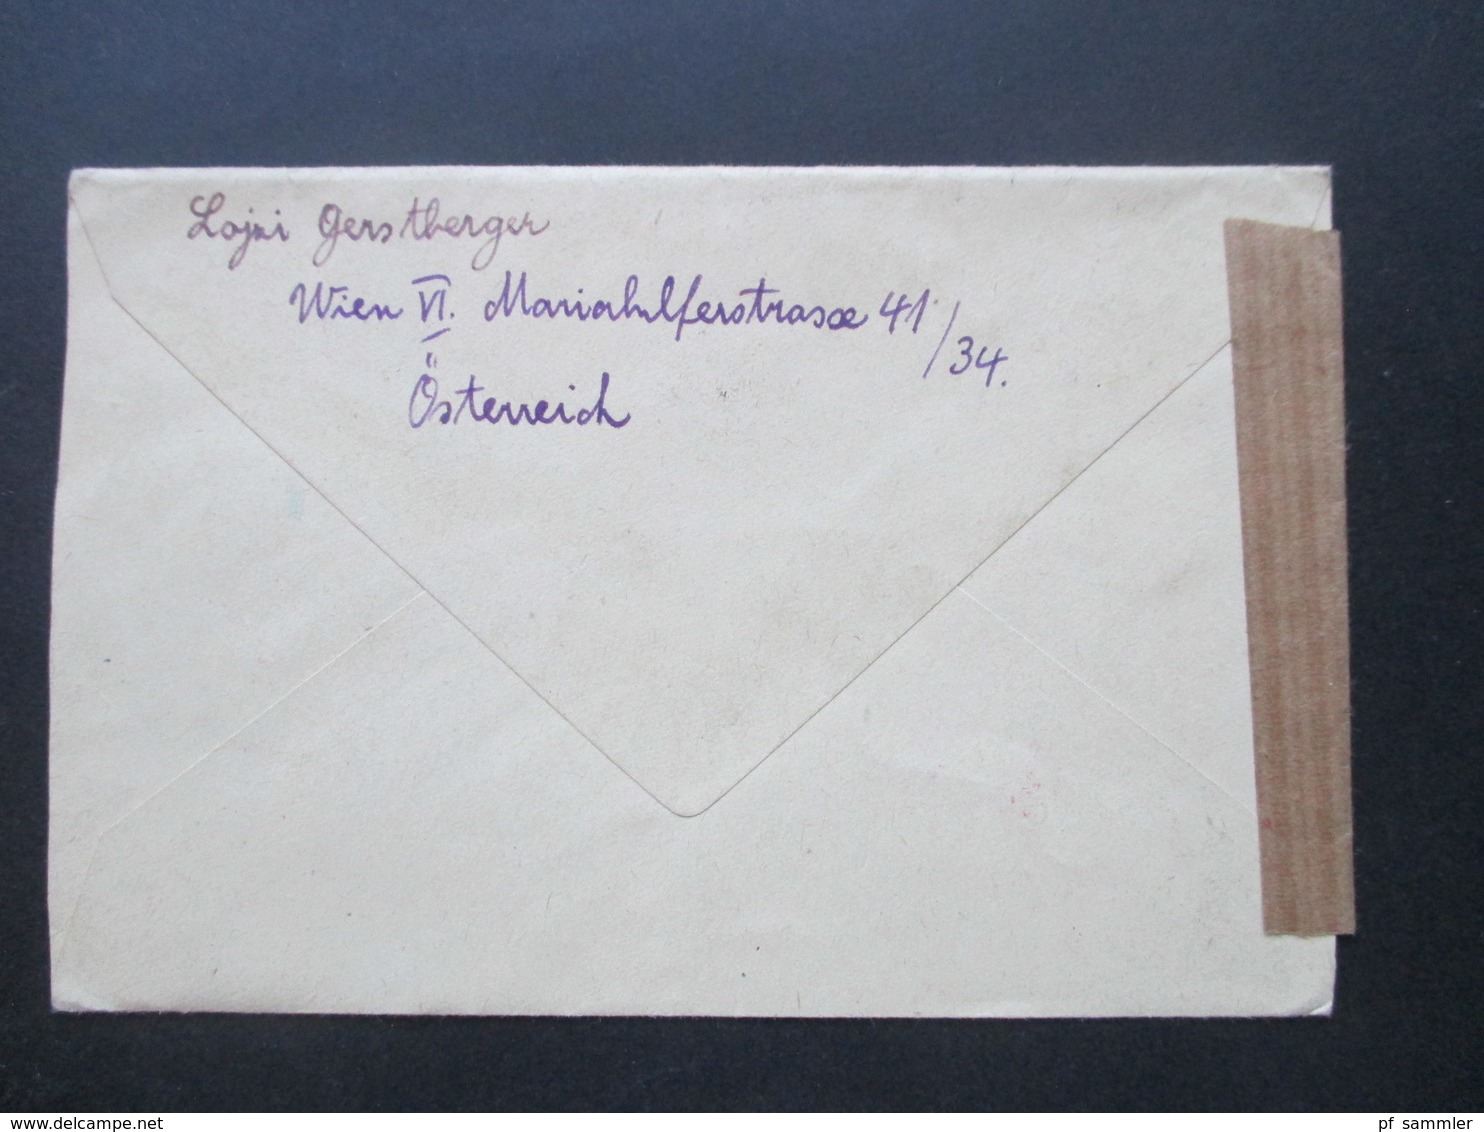 Österreich 1948 Landschaften 2 Schilling Wert Nr. 851 MiF Einschreiben / Zensurbeleg In Die CSR Österreichische Zensurst - Covers & Documents